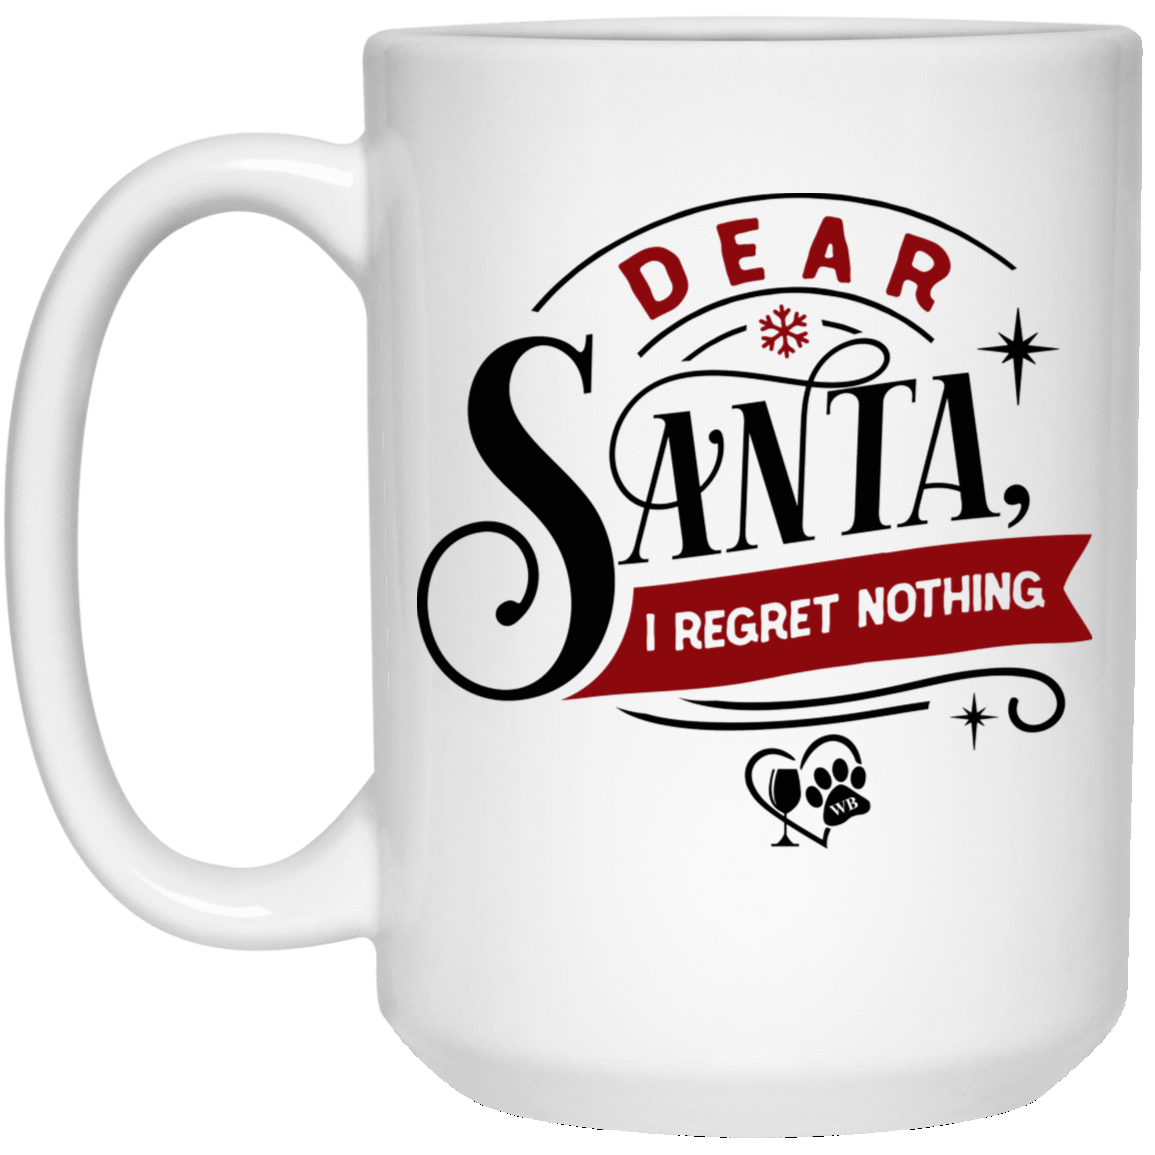 Drinkware White / One Size Winey Bitches Co "Dear Santa I Regret Nothing" 15 oz. White Mug WineyBitchesCo